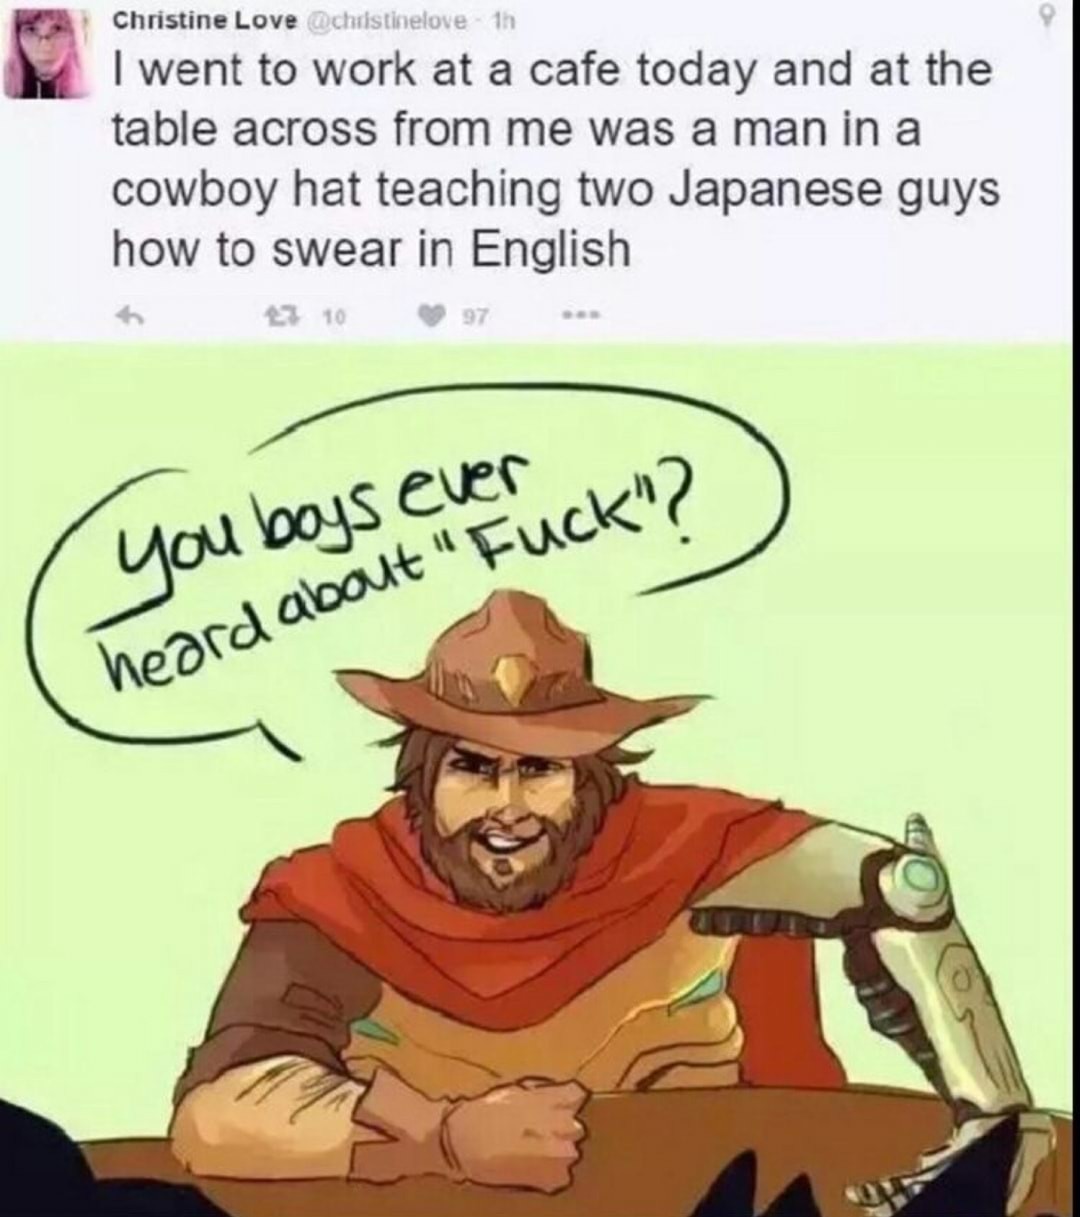 Share your wisdom cowboy - meme